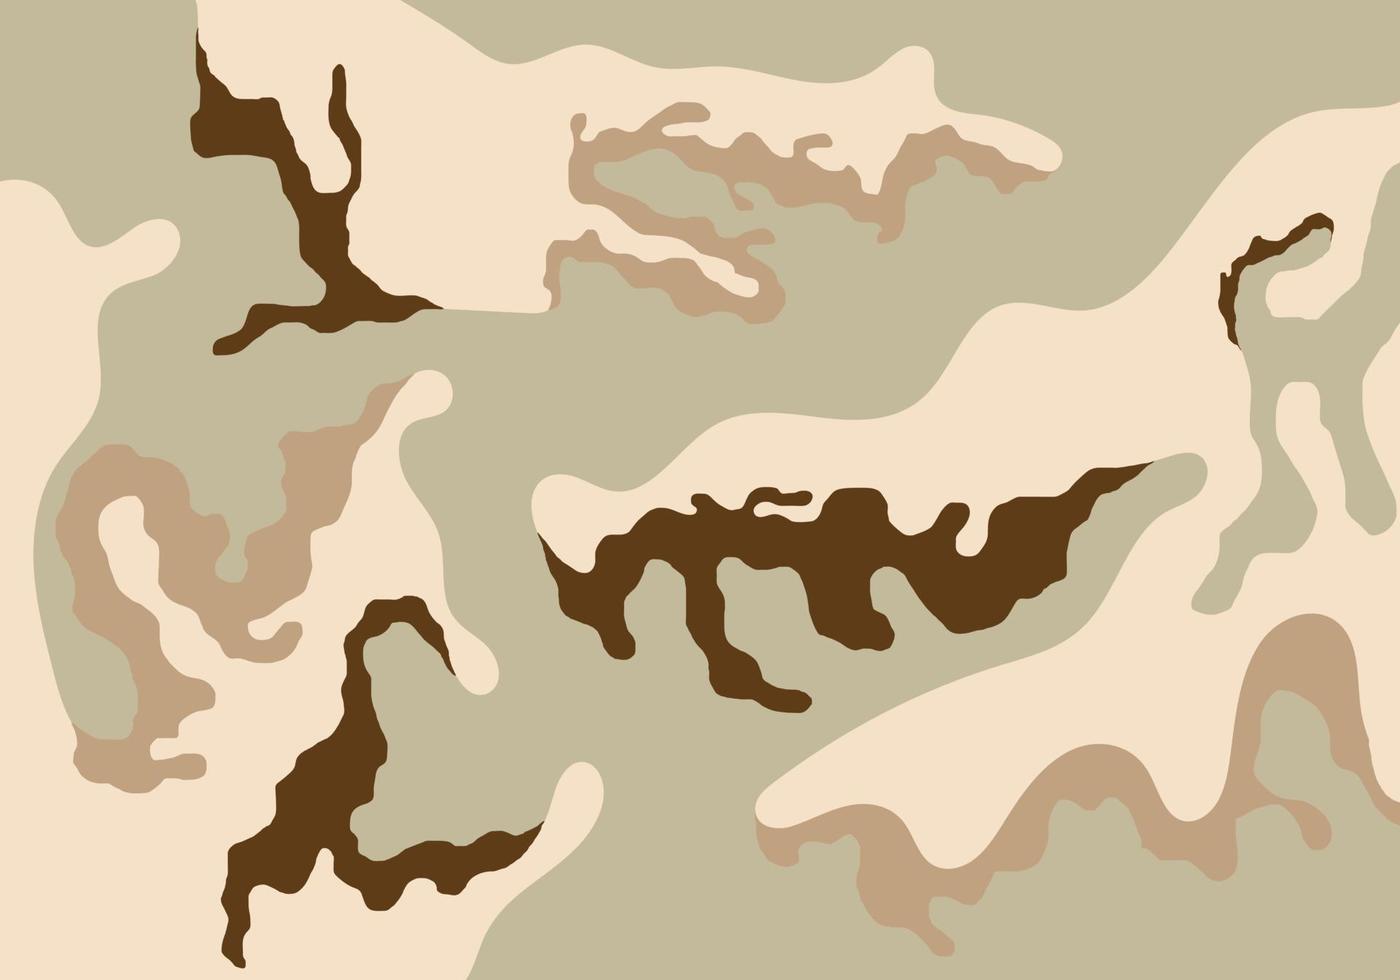 Camouflage-Soldaten-Musterdesign, Camouflage-Uniform-Wüstendruck-Kleidungsarmee-Soldaten-Braunmuster-Designhintergrund-Vektorillustration vektor